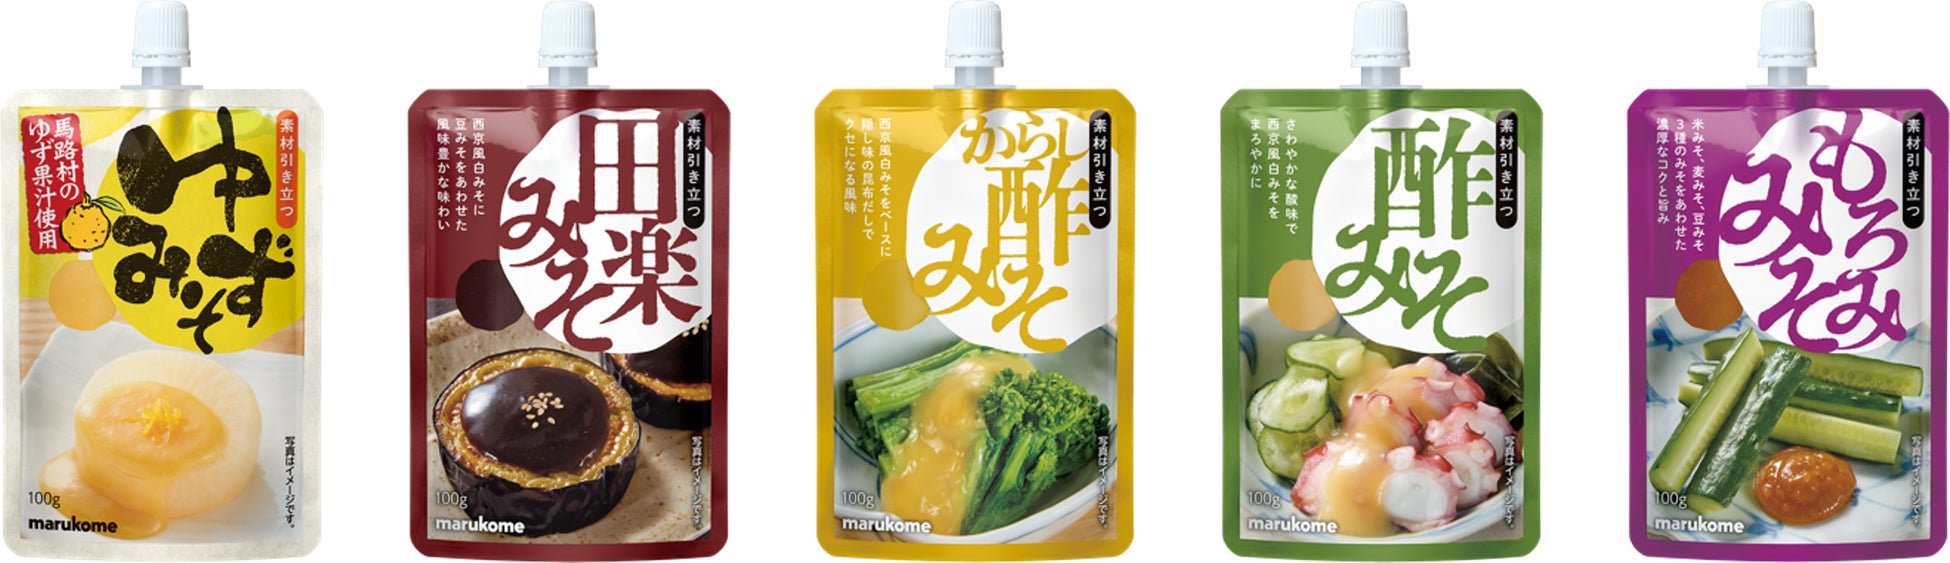 関連販売で好調の菰田欣也監修シリーズに辛さ控えめの麻婆豆腐が新登場。